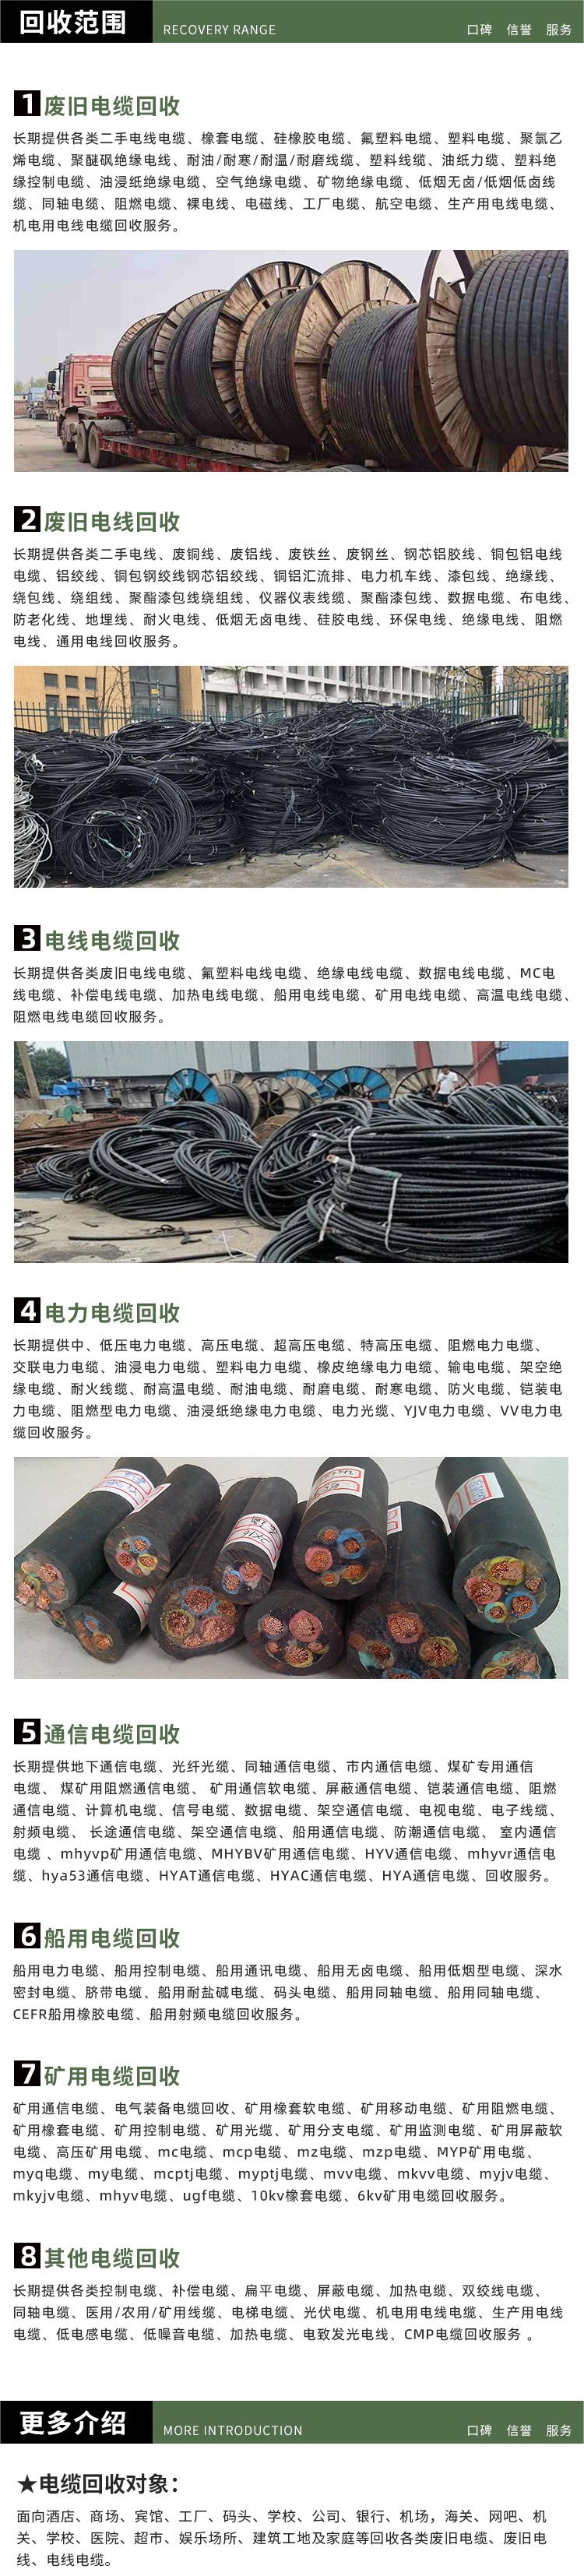 深圳宝安s9变压器拆除回收配电房收购厂家提供服务